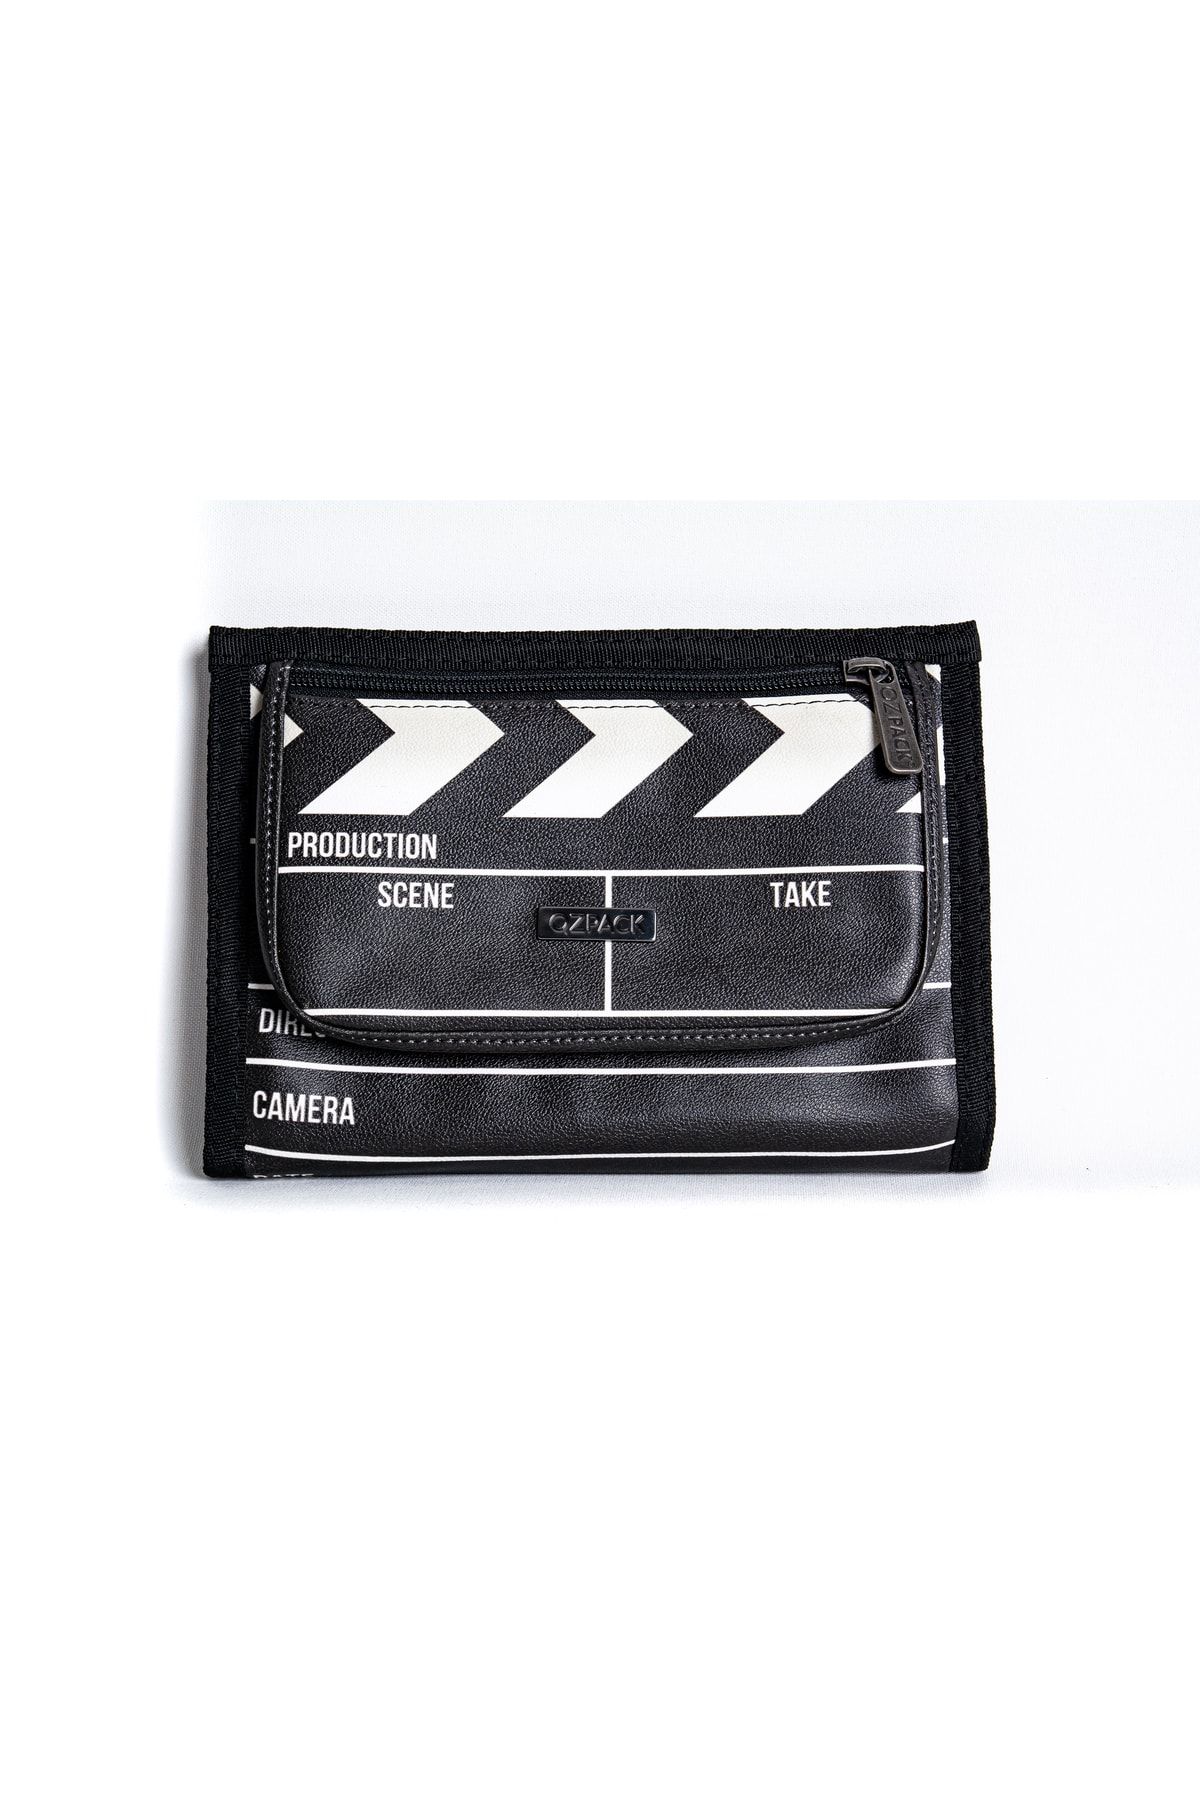 Ozpack Film Mini Tablet FKD094